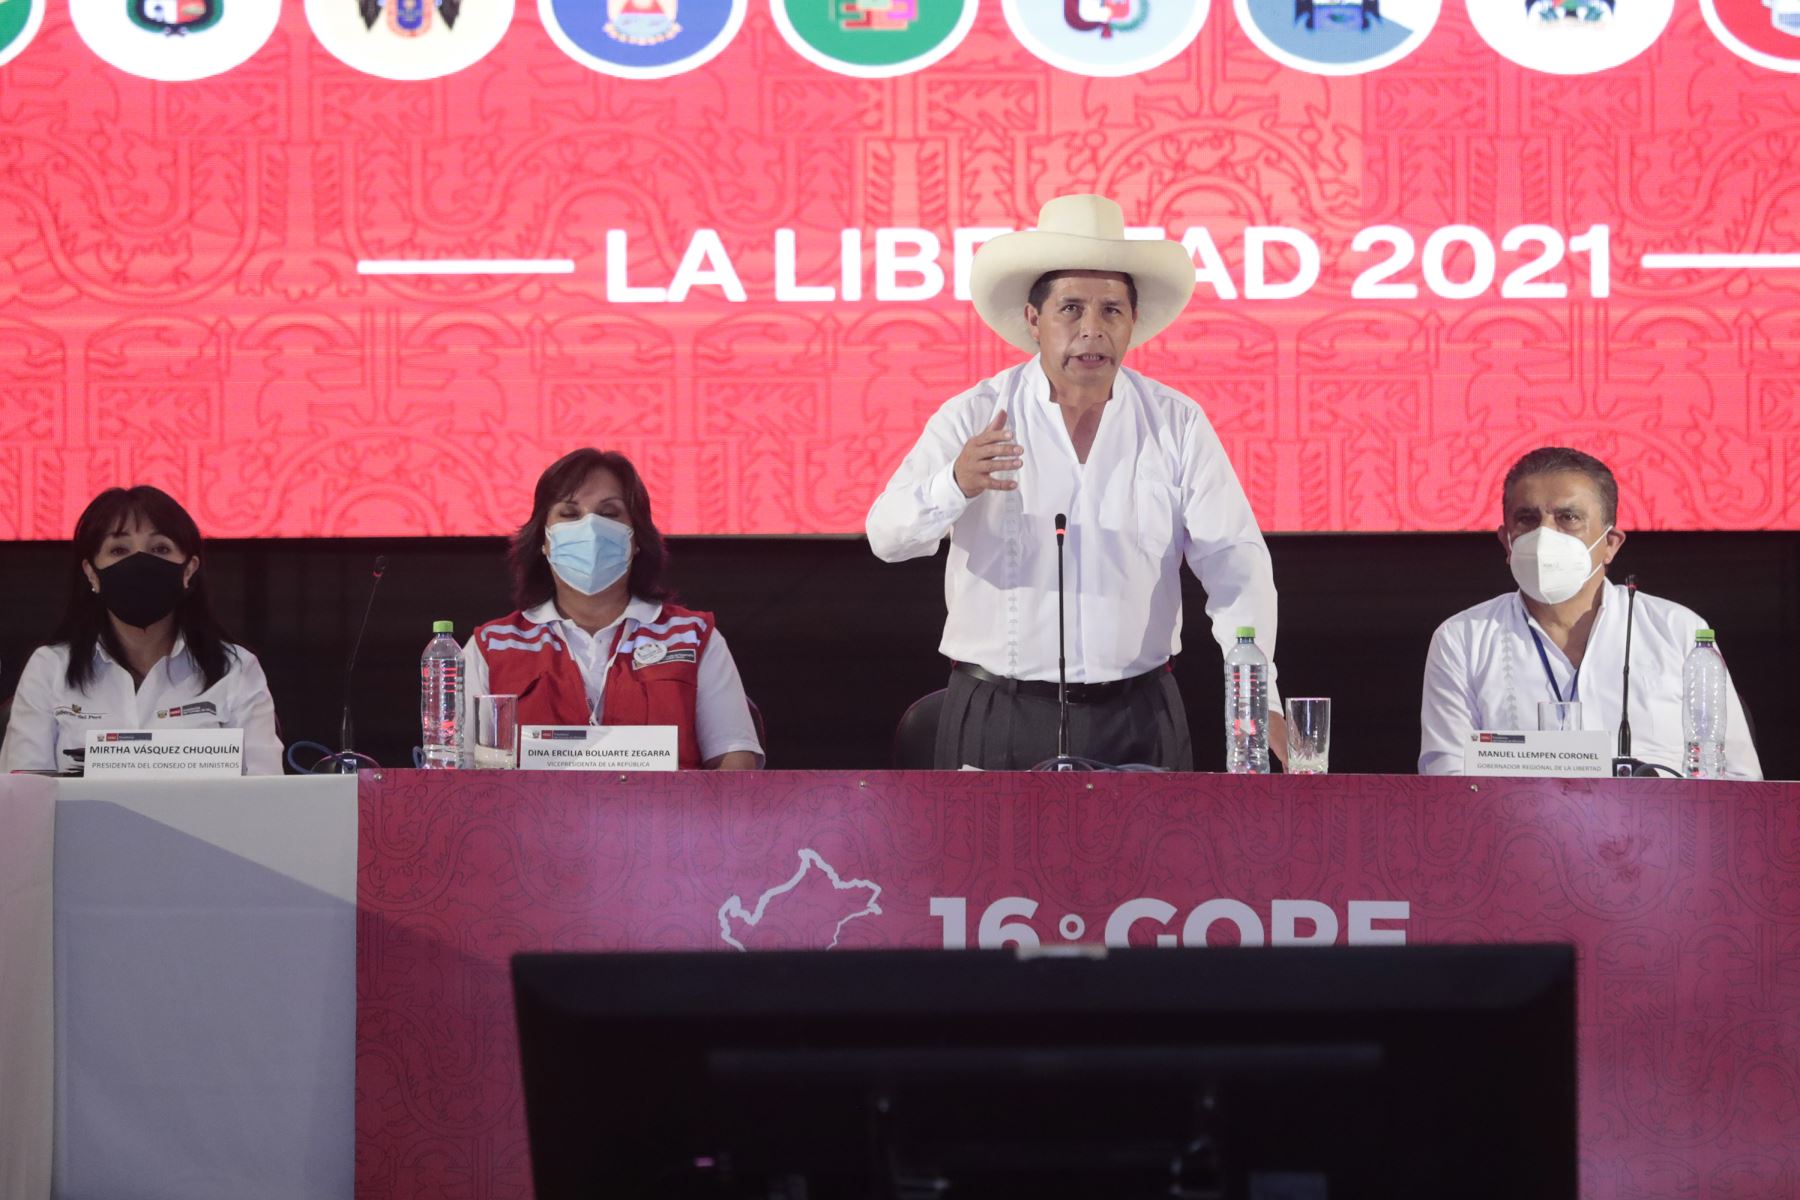 El presidente de la República, Pedro Castillo, participa en 16° GORE Ejecutivo que se desarrolla en la ciudad de Trujillo. Foto: ANDINA/Prensa Presidencia